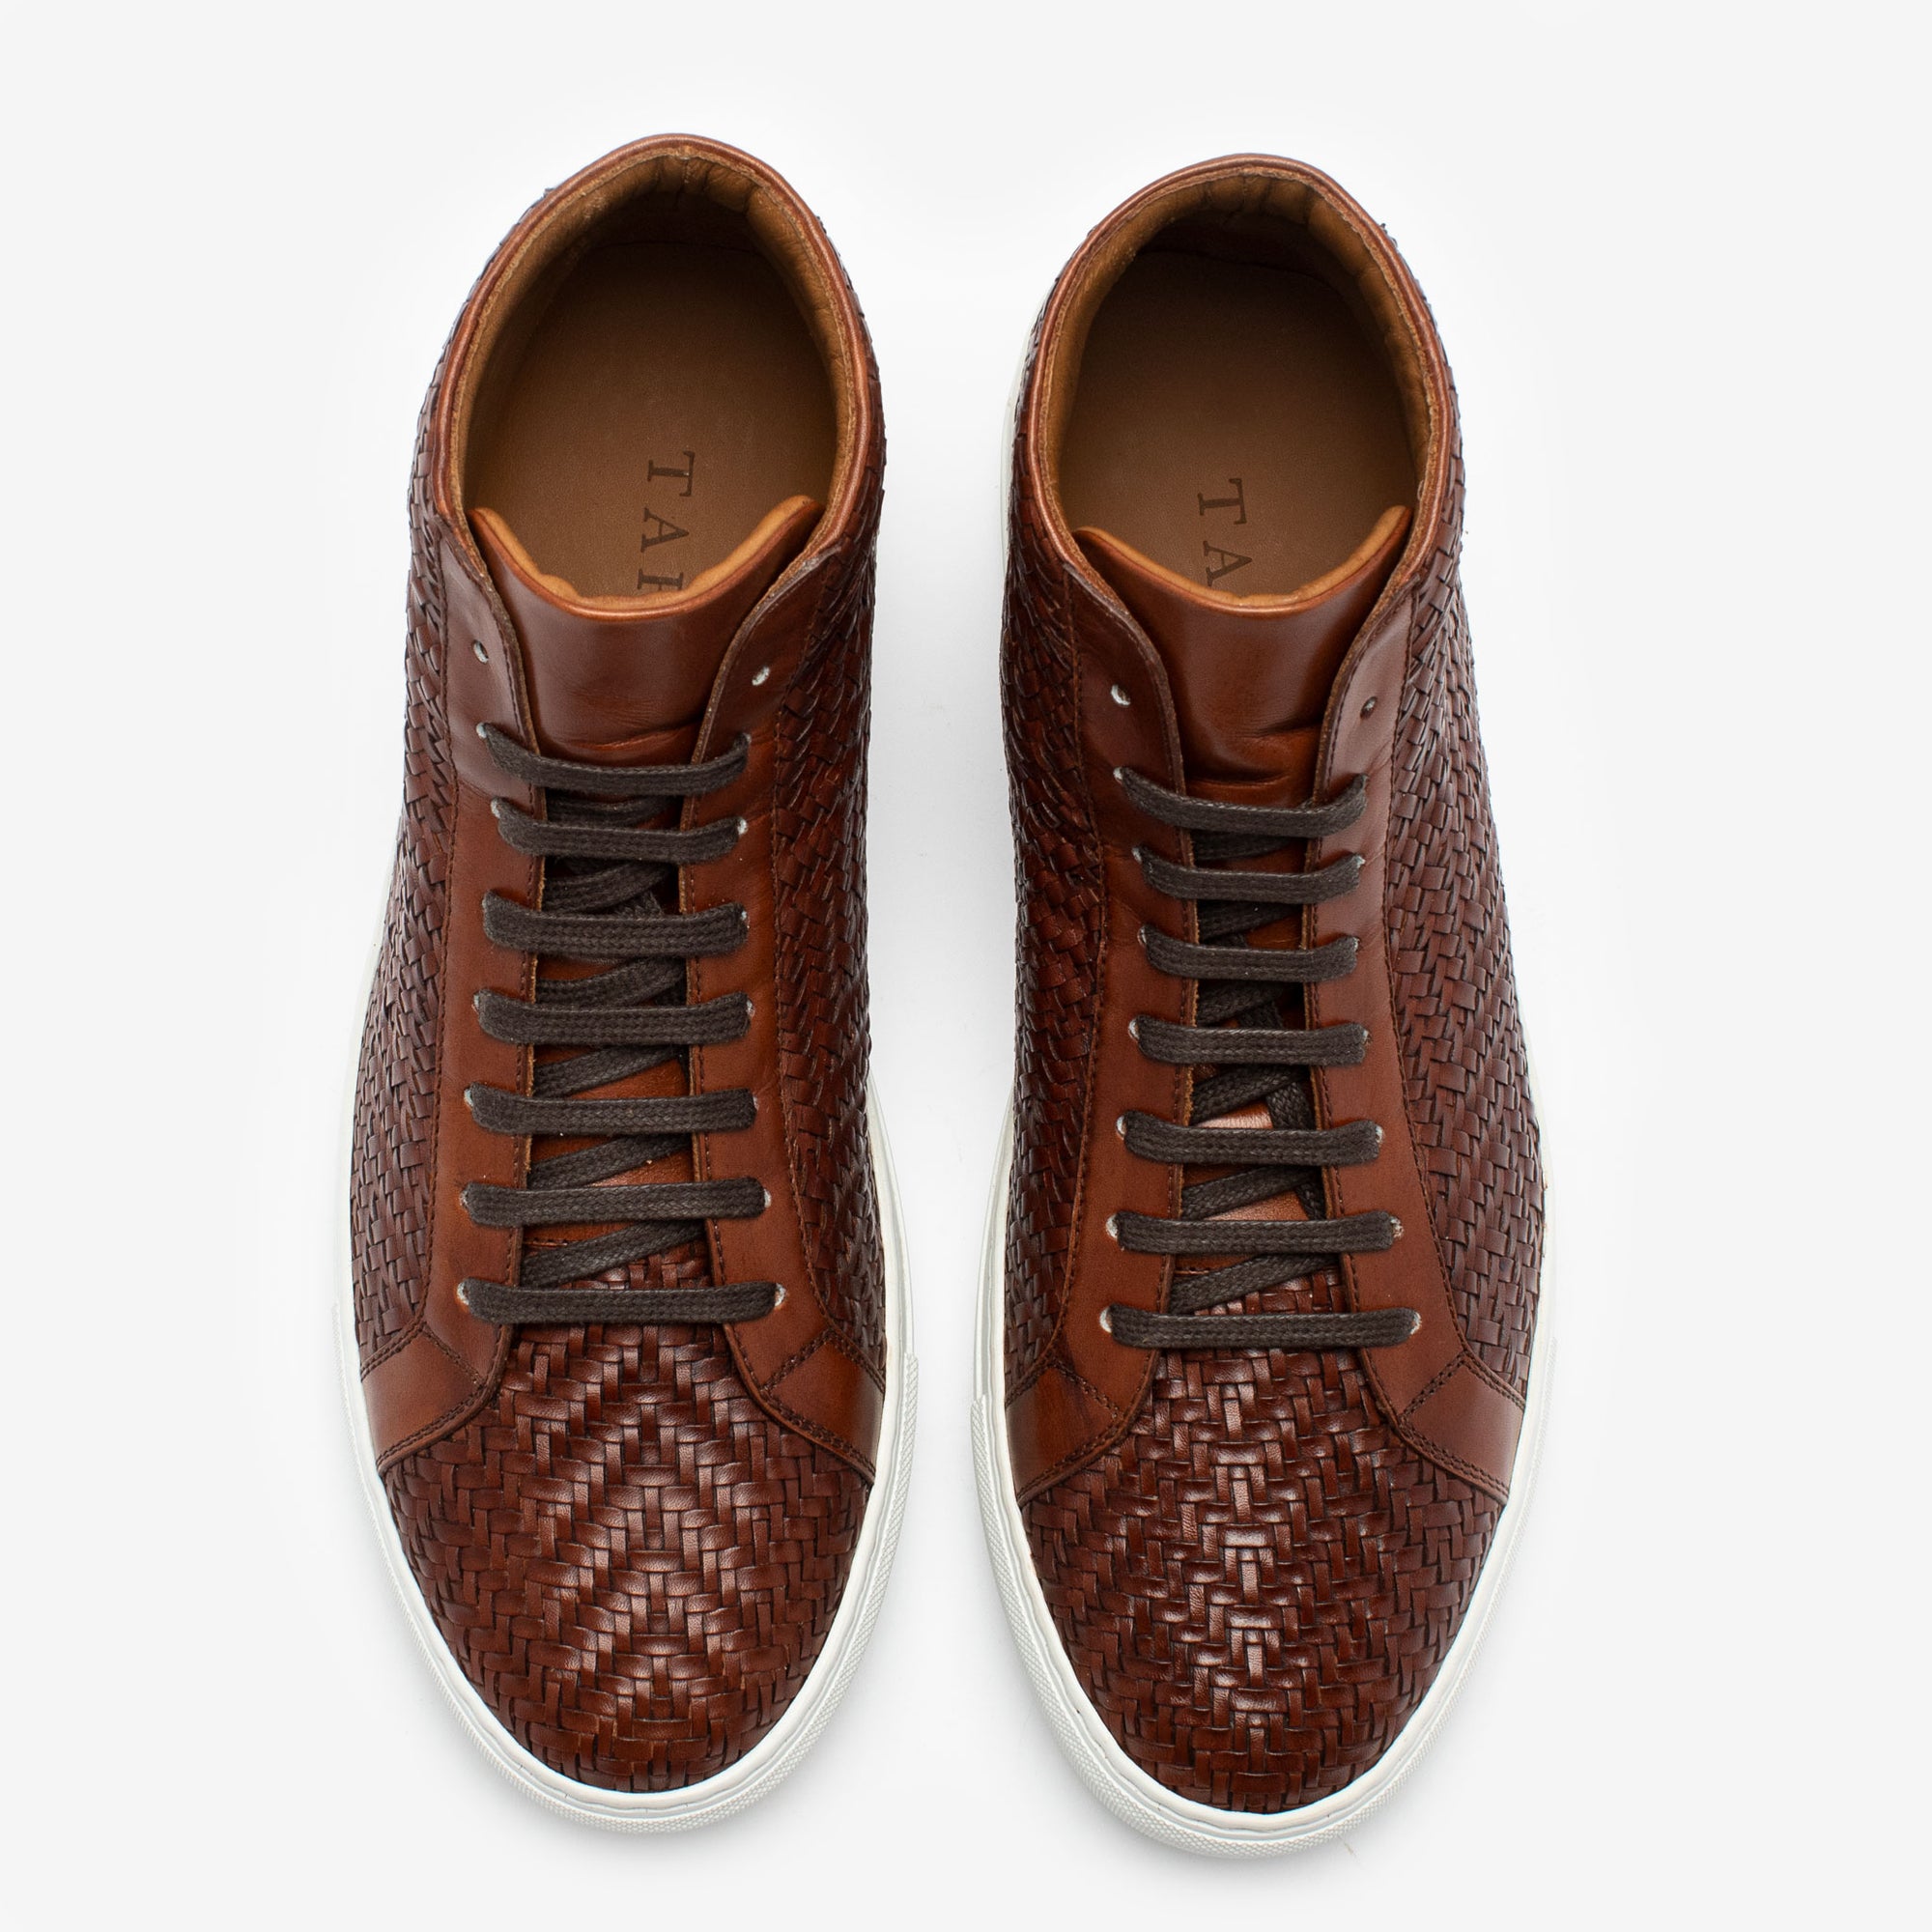 Louis Vuitton mens shoes dress 7.5 - 8.5 us